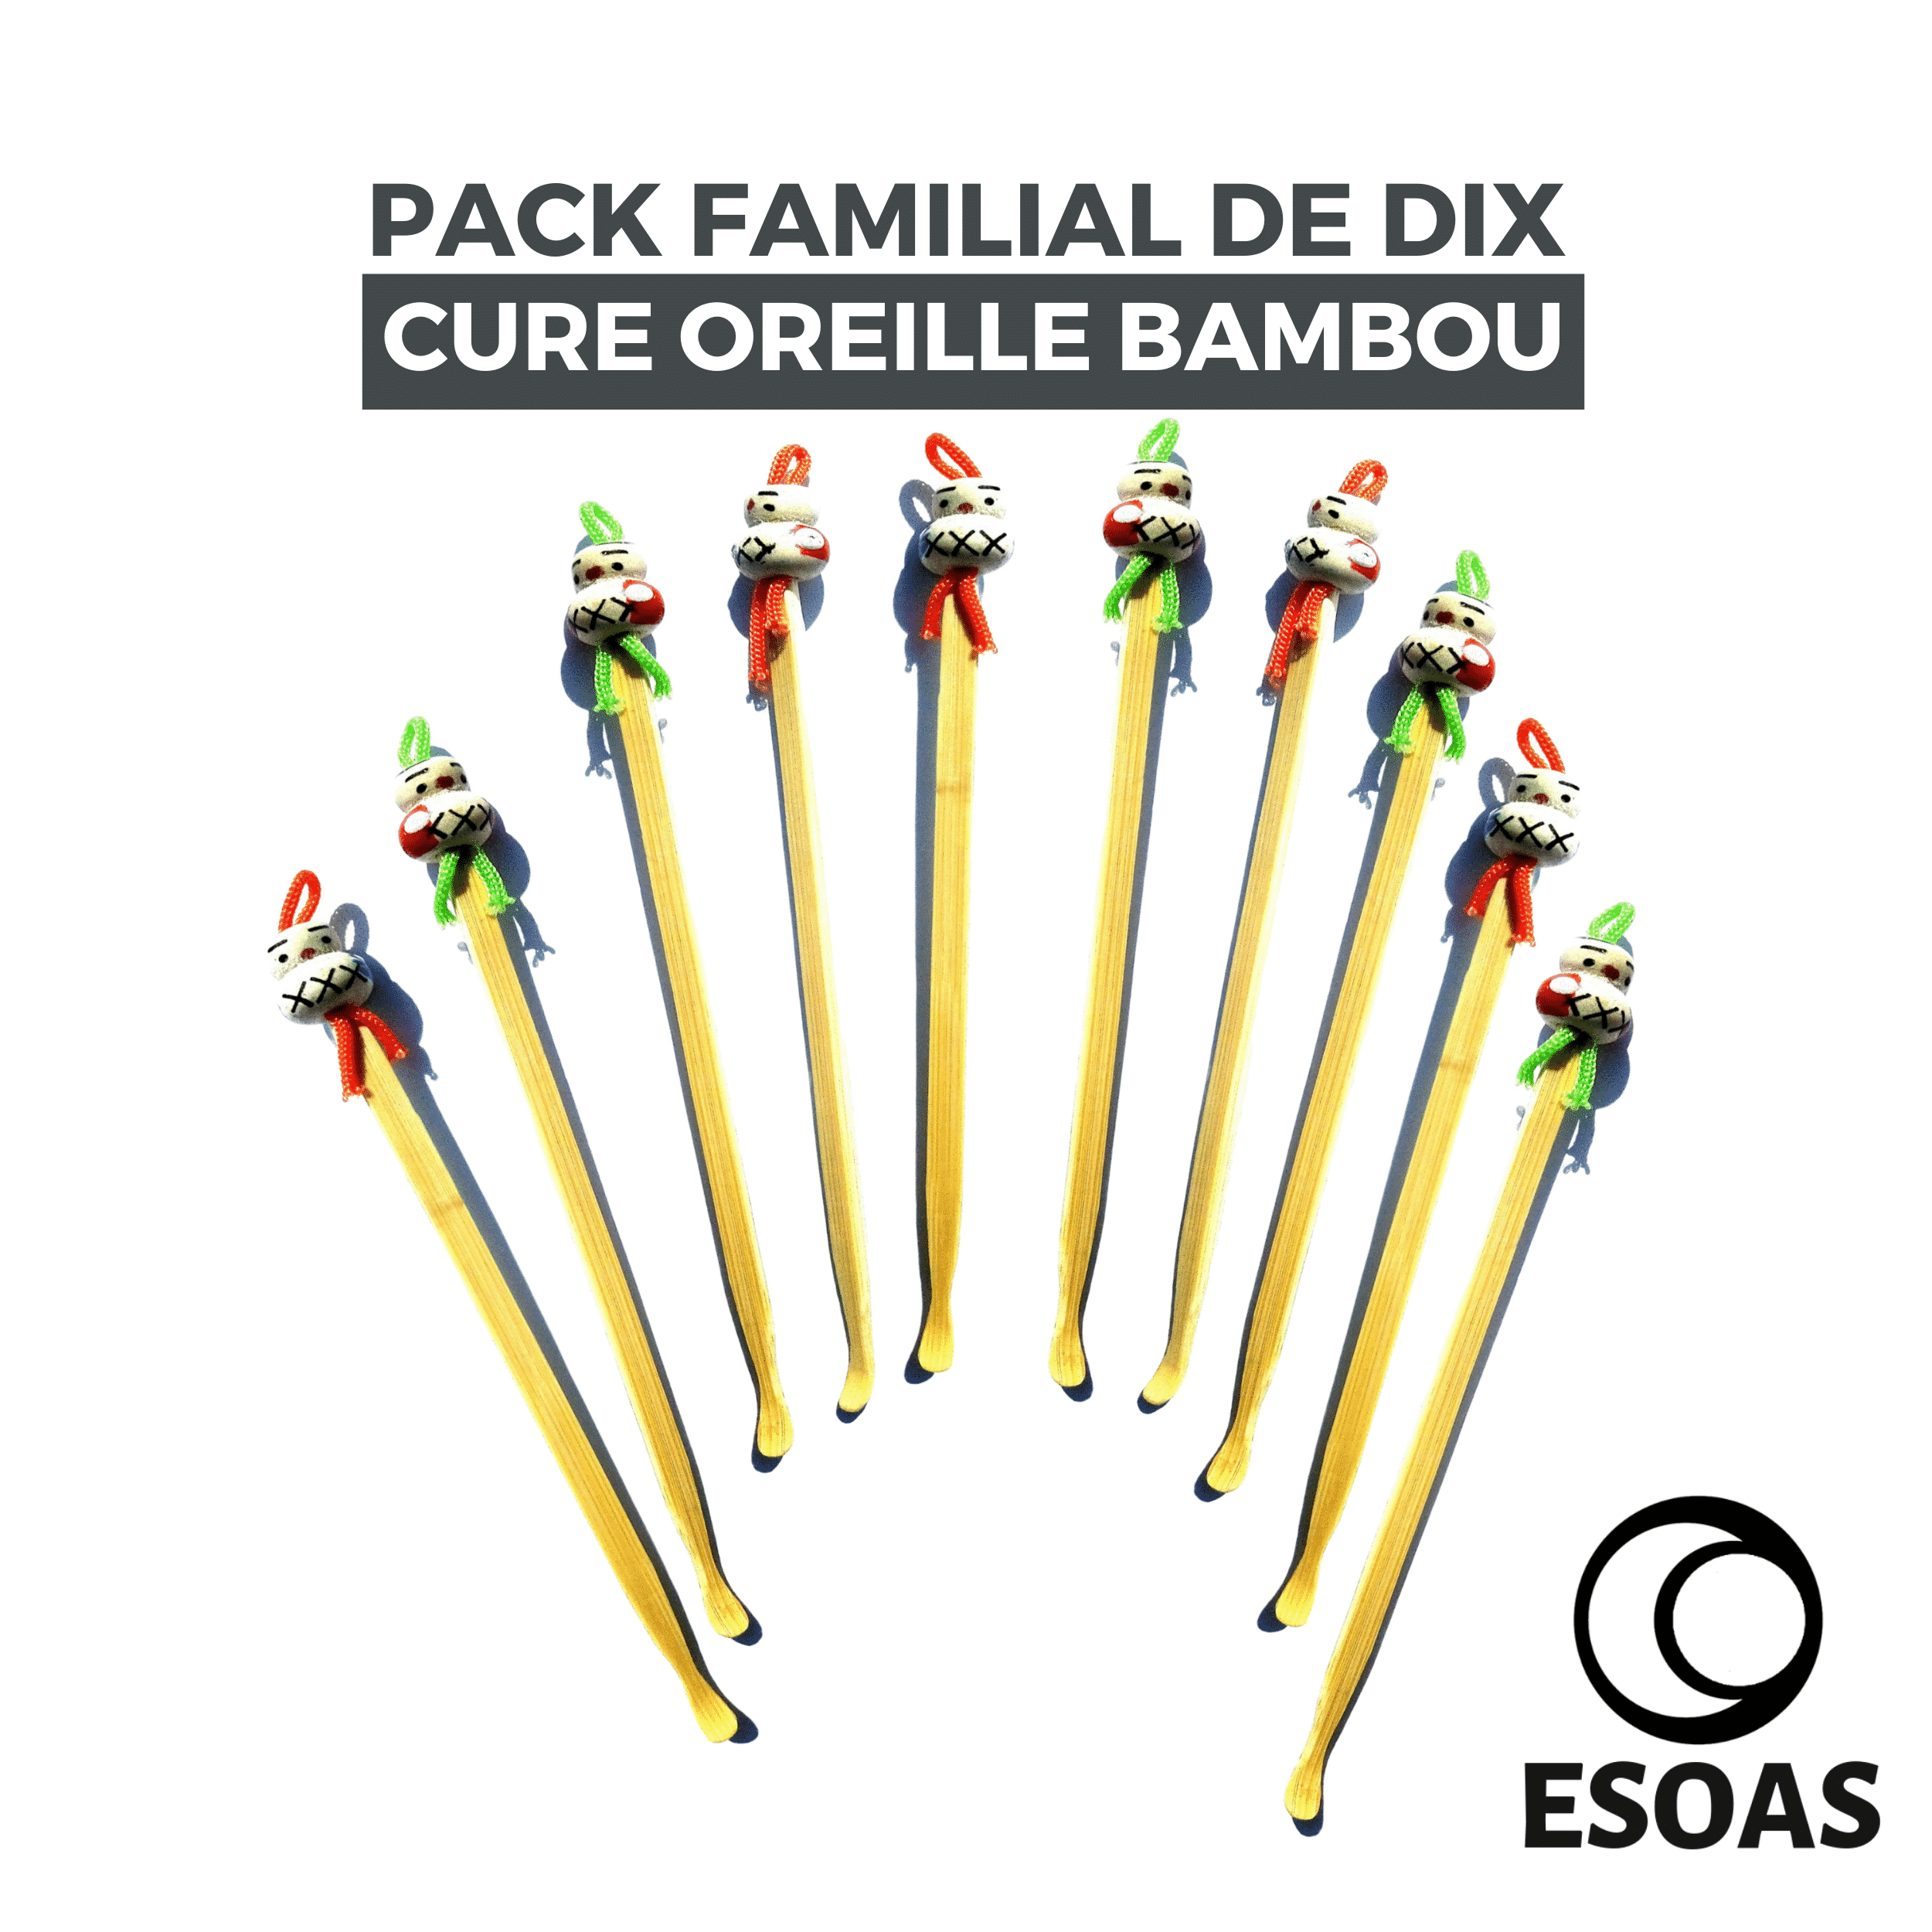 Cure oreilles (oriculi) en bambou - 1 u - Savonnerie Du Tilleul 